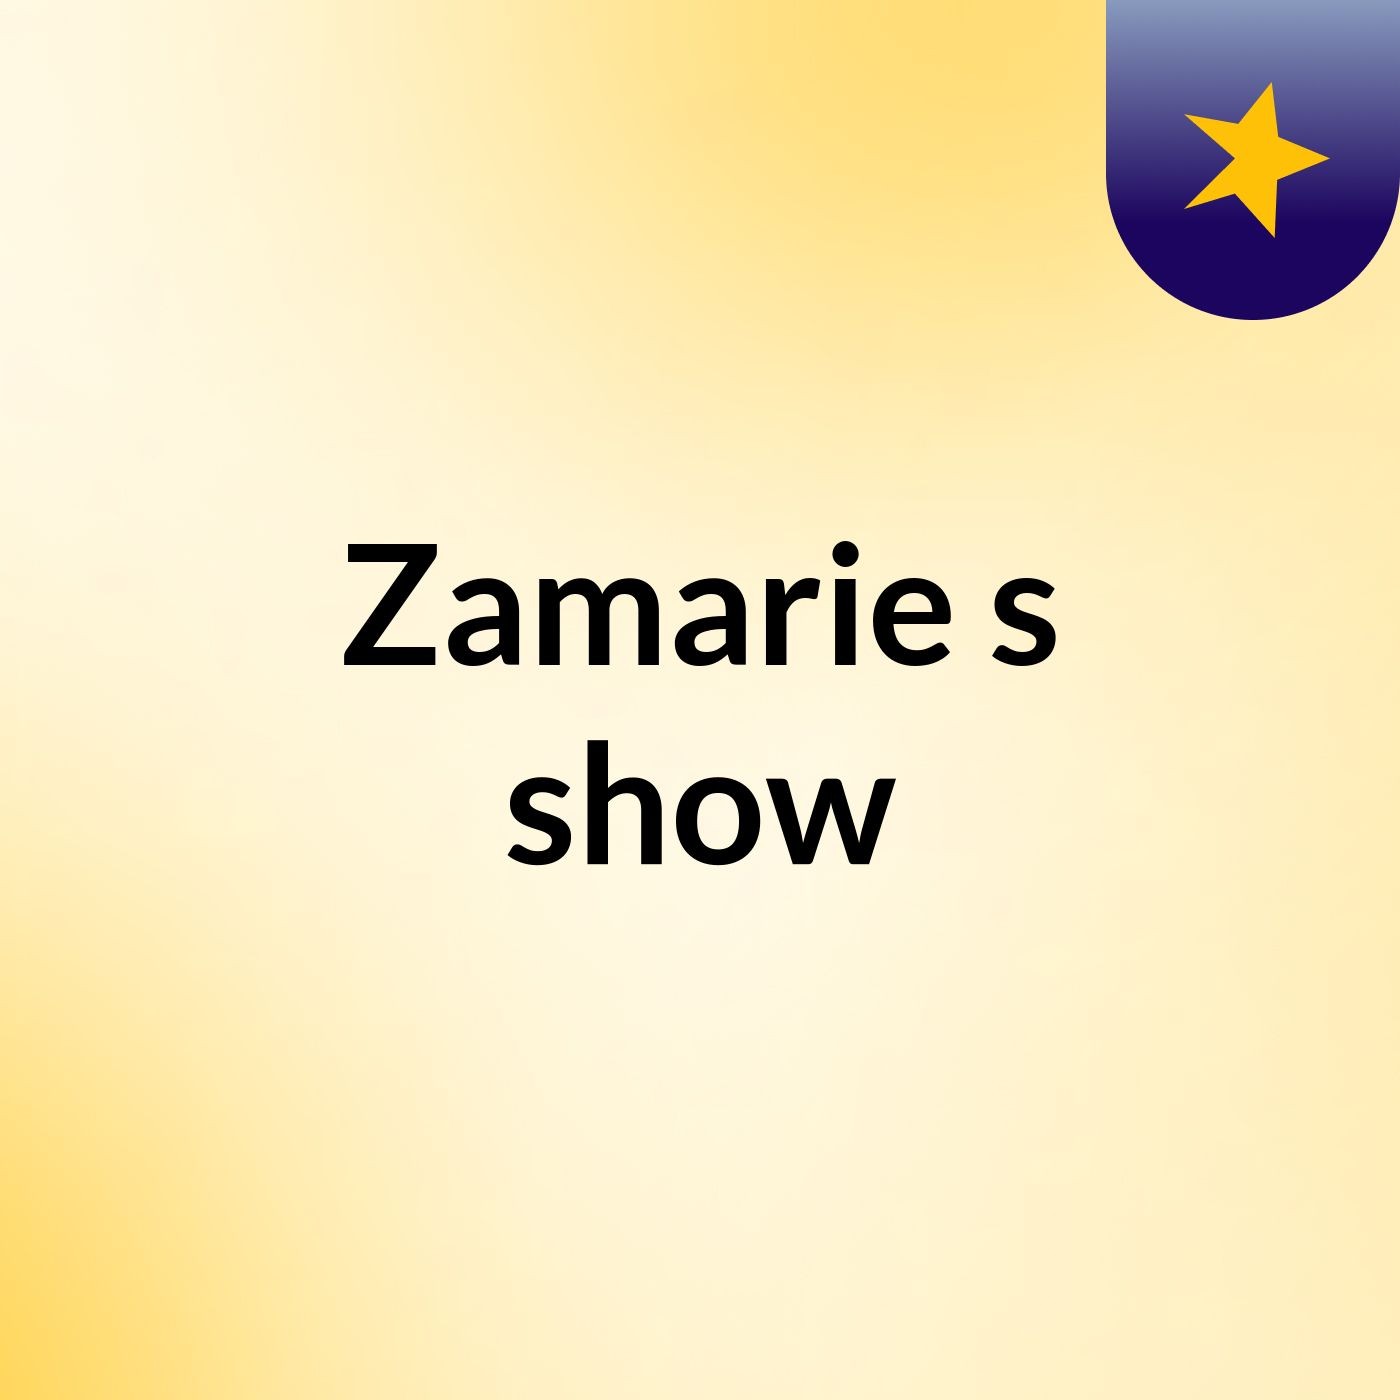 Zamarie's show